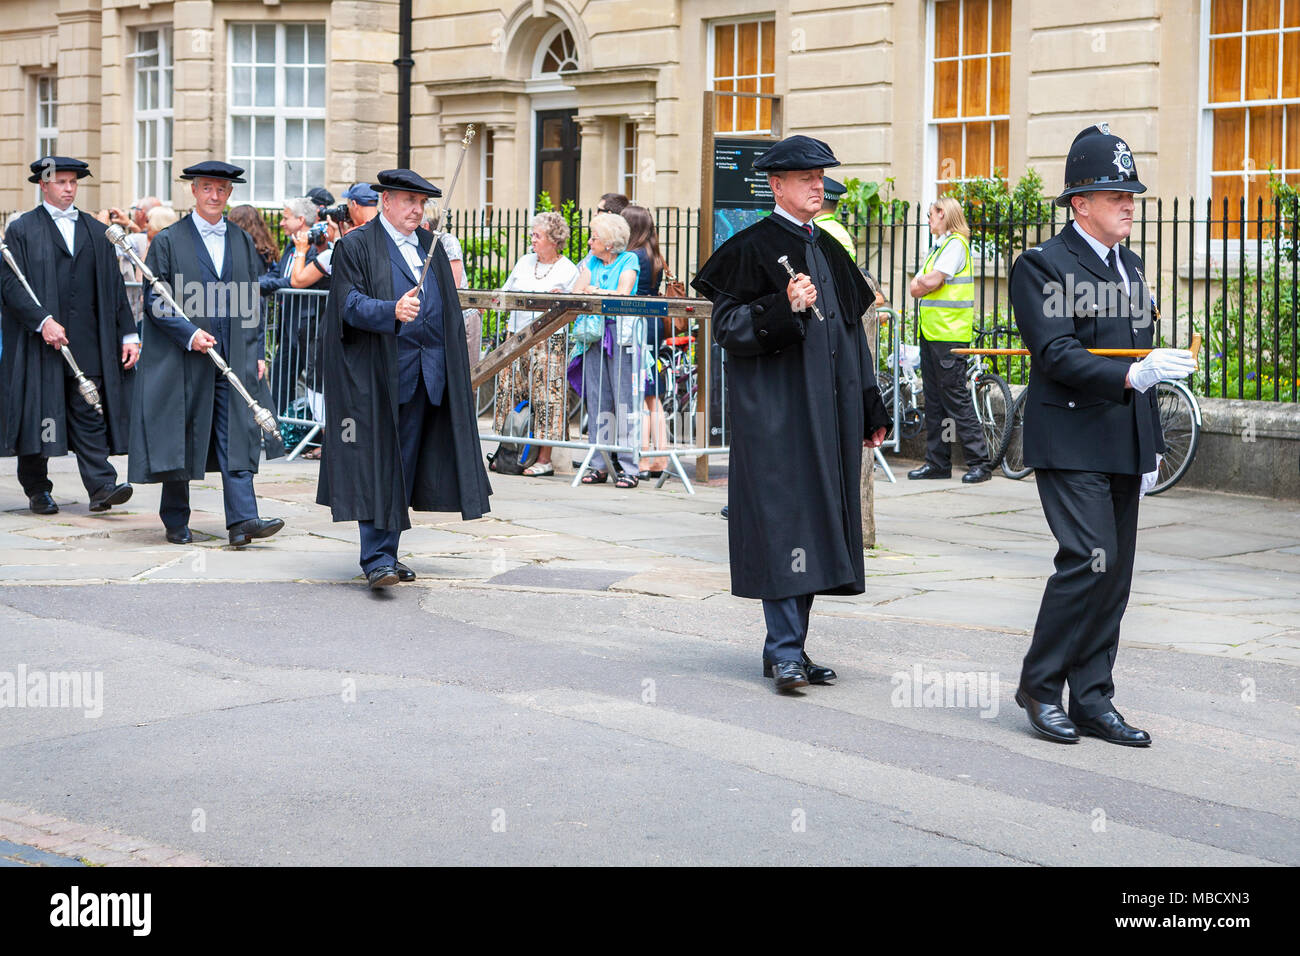 Gli ispettori ufficiali e accademici processo lungo Catte street a tutte le anime College di Oxford University a giorno di graduazione. Oxford, Inghilterra Foto Stock